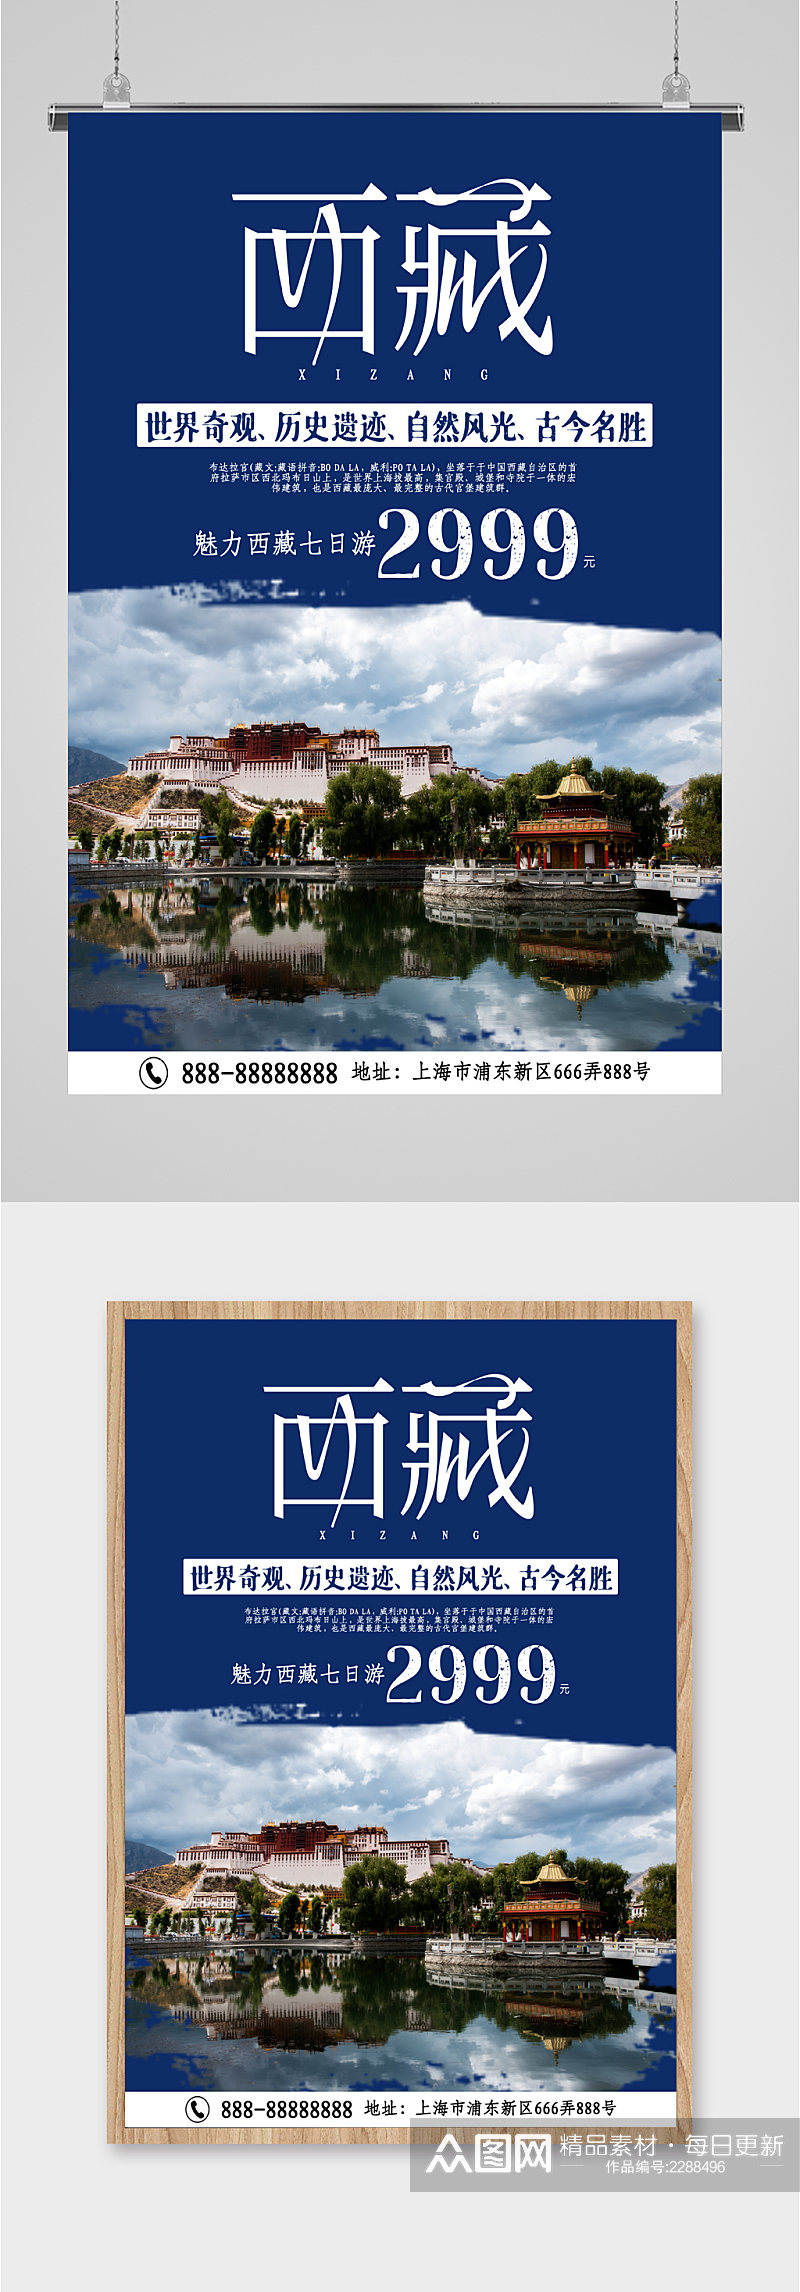 西藏特价旅游海报素材